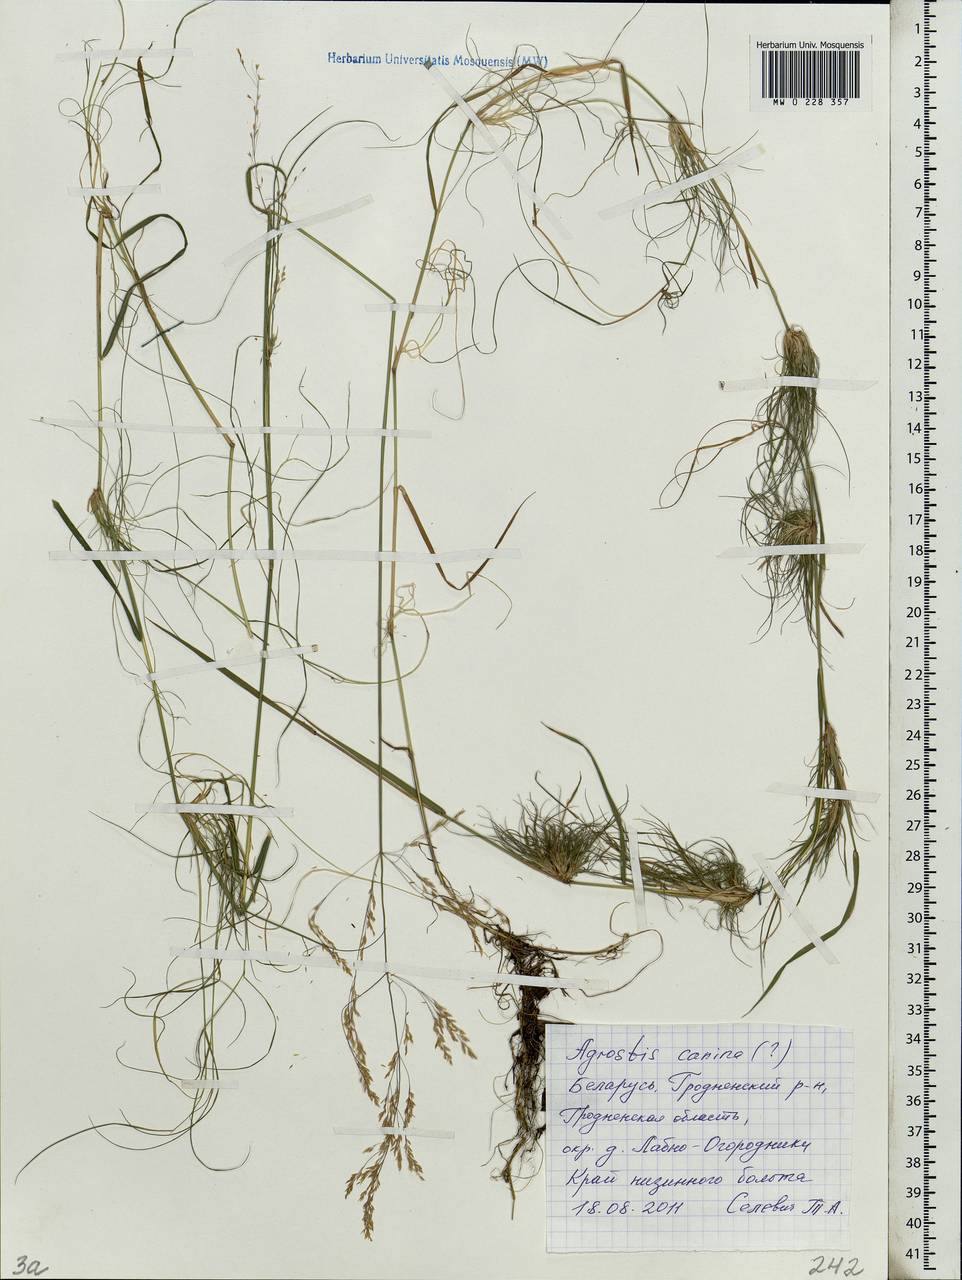 Agrostis canina L., Eastern Europe, Belarus (E3a) (Belarus)